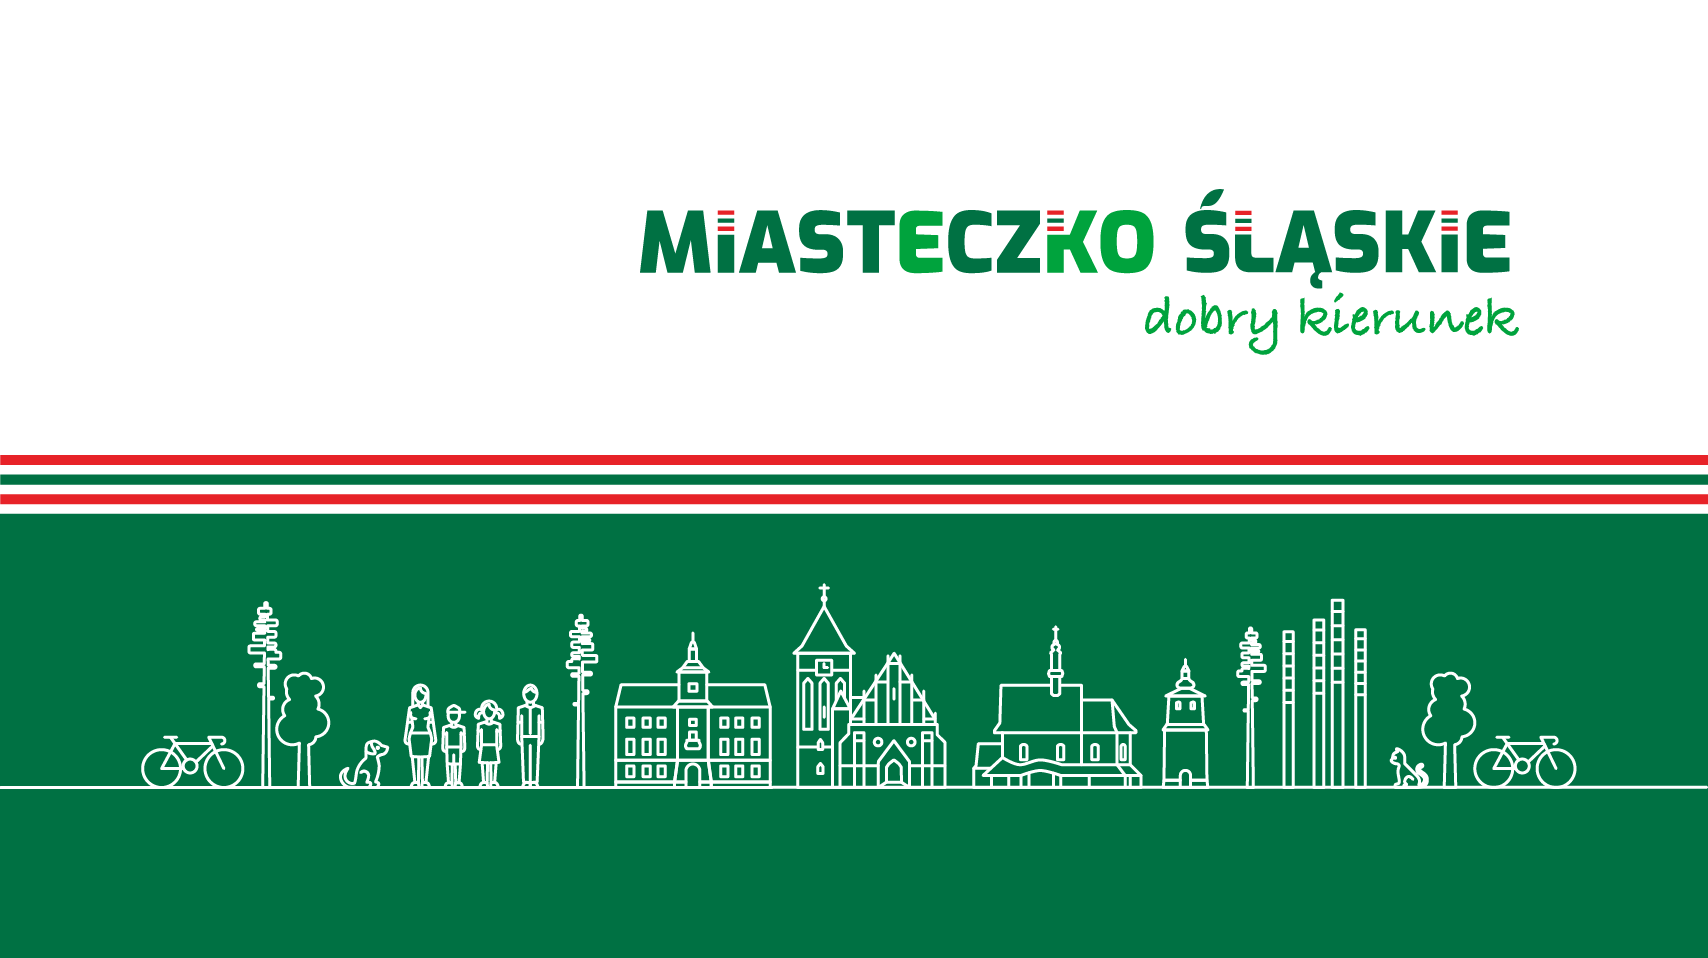 Zarządzenie nr 1056/21 Burmistrza Miasta Miasteczko Śląskie